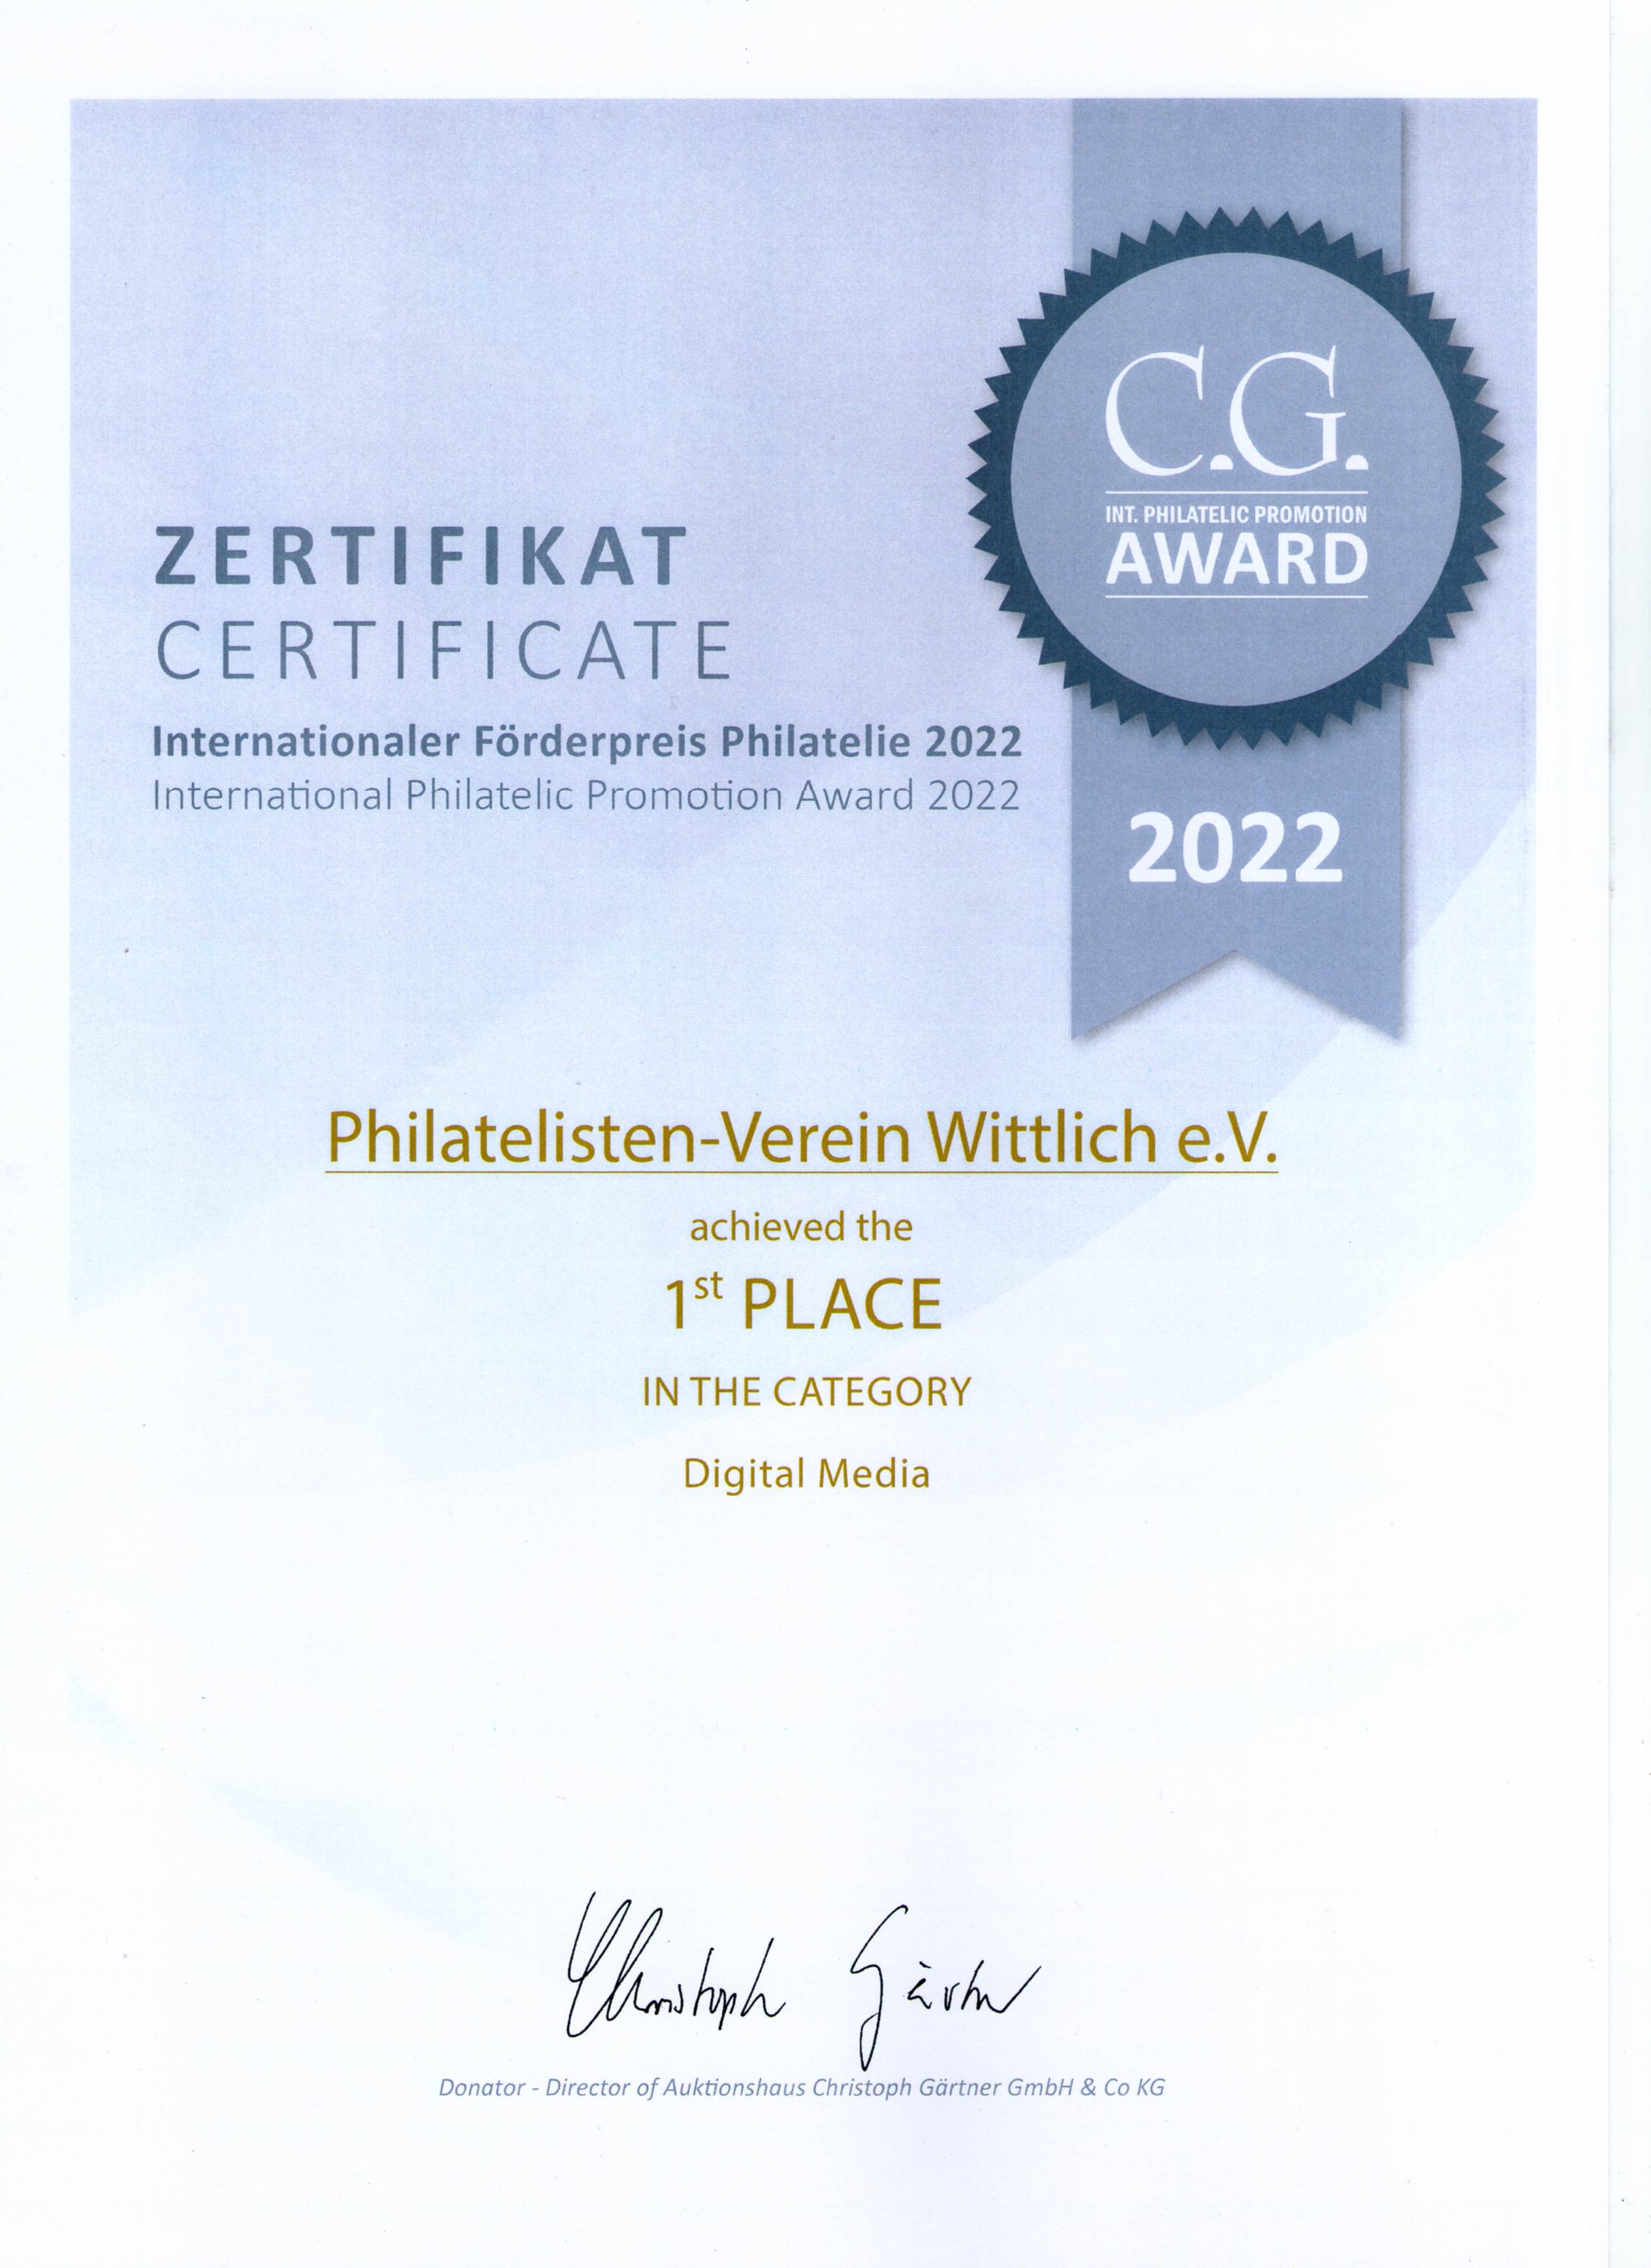 CG Award 2022 Zertifikat2